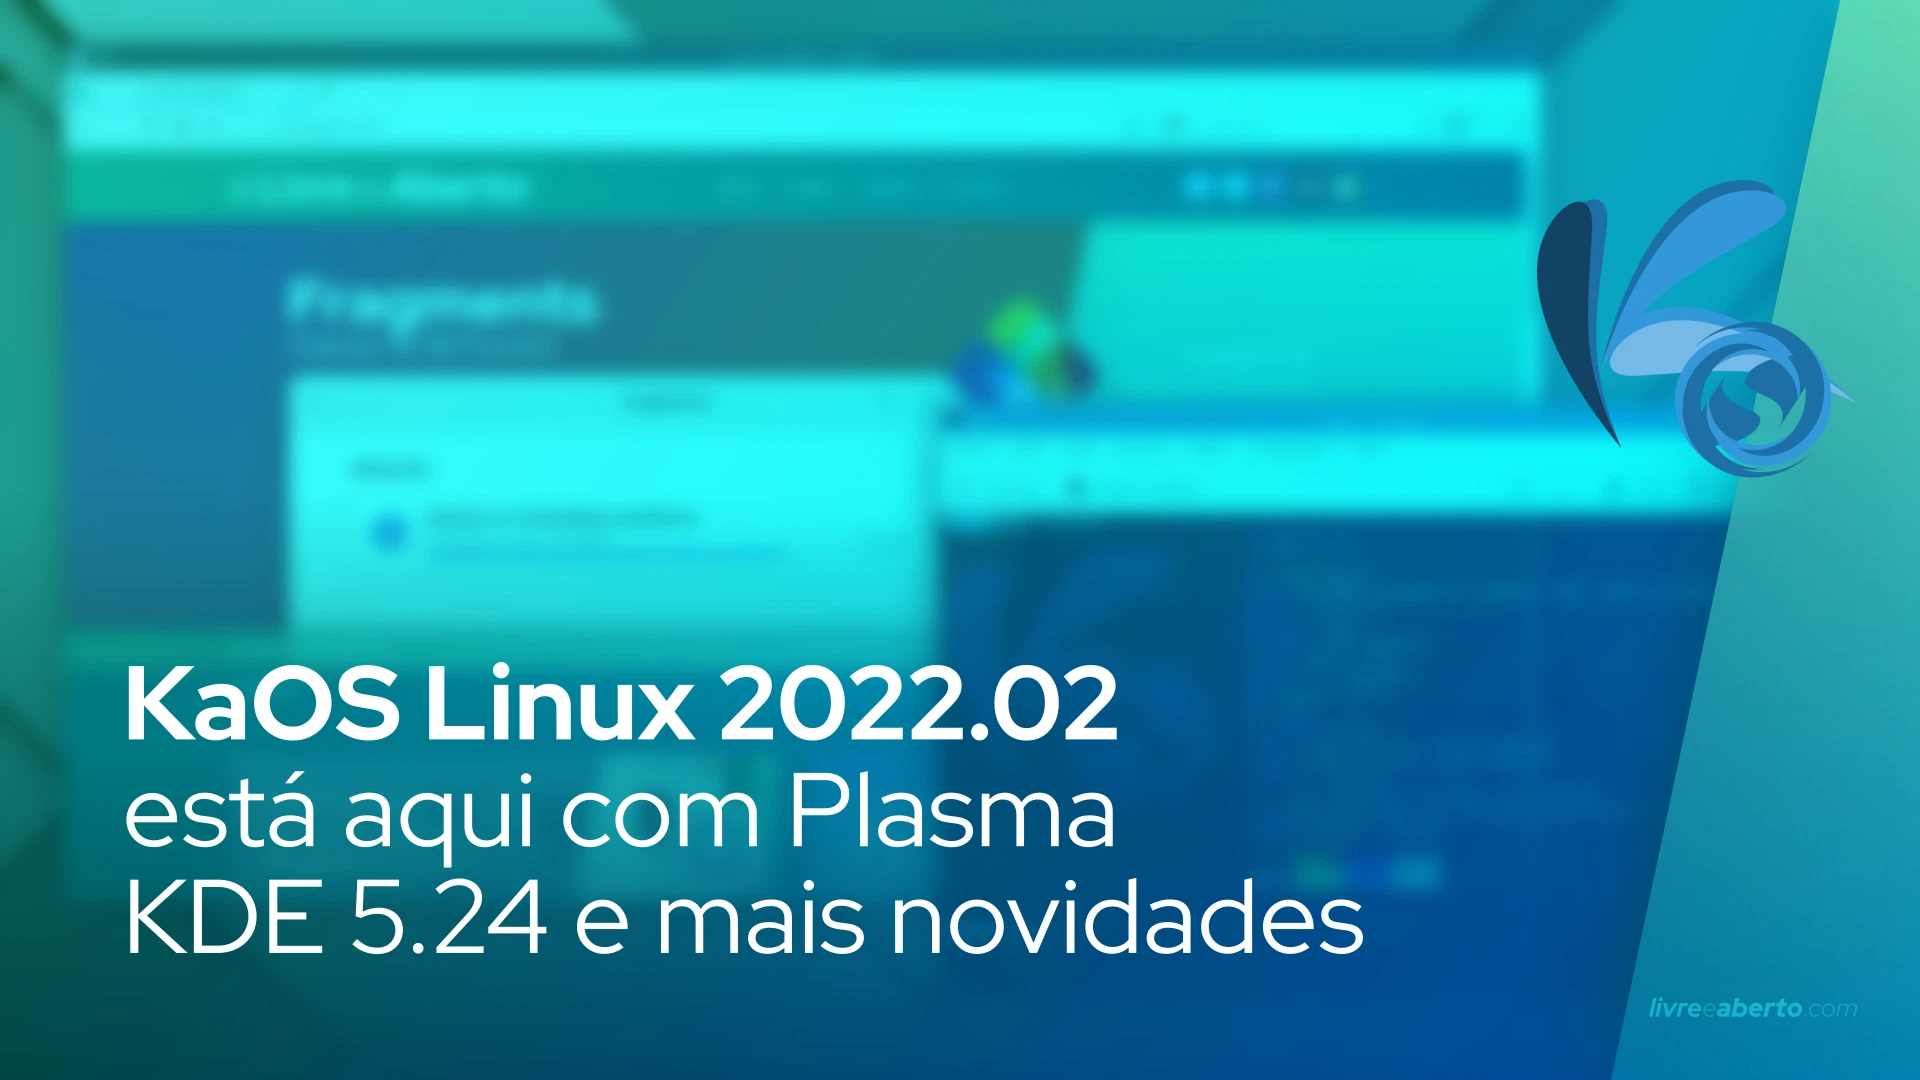 KaOS Linux 2022.02 está aqui com Plasma KDE 5.24 e torna Plasma Wayland a sessão padrão